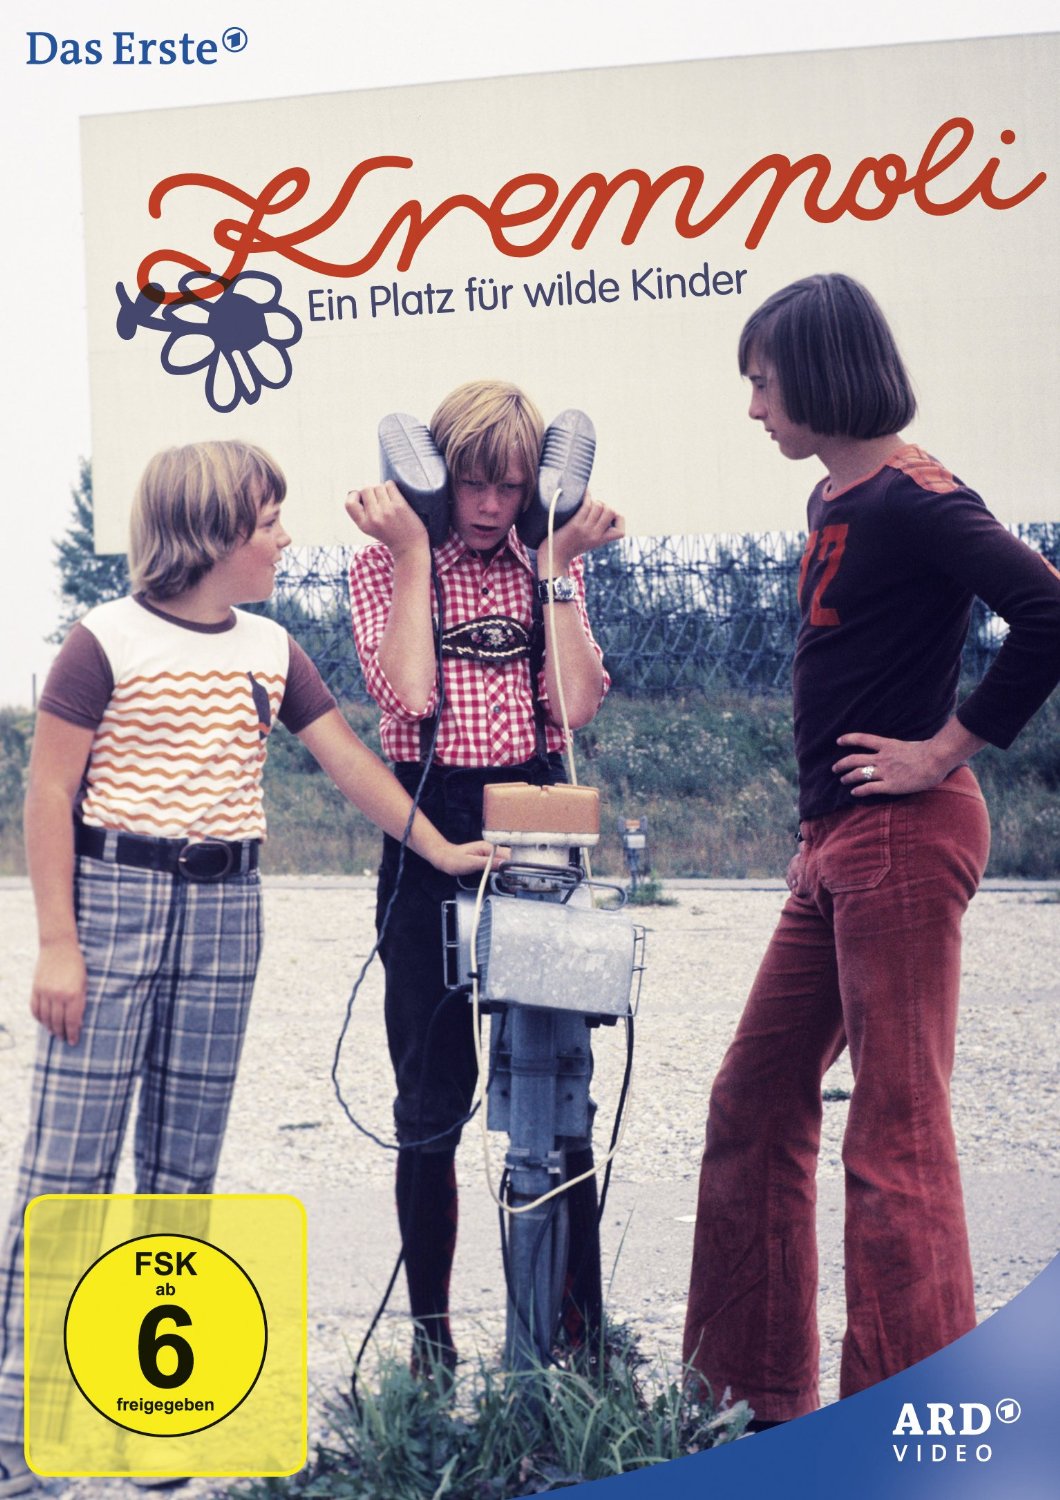 Krempoli - Ein Platz fur wilde Kinder (1975) All 10 Episodes 4